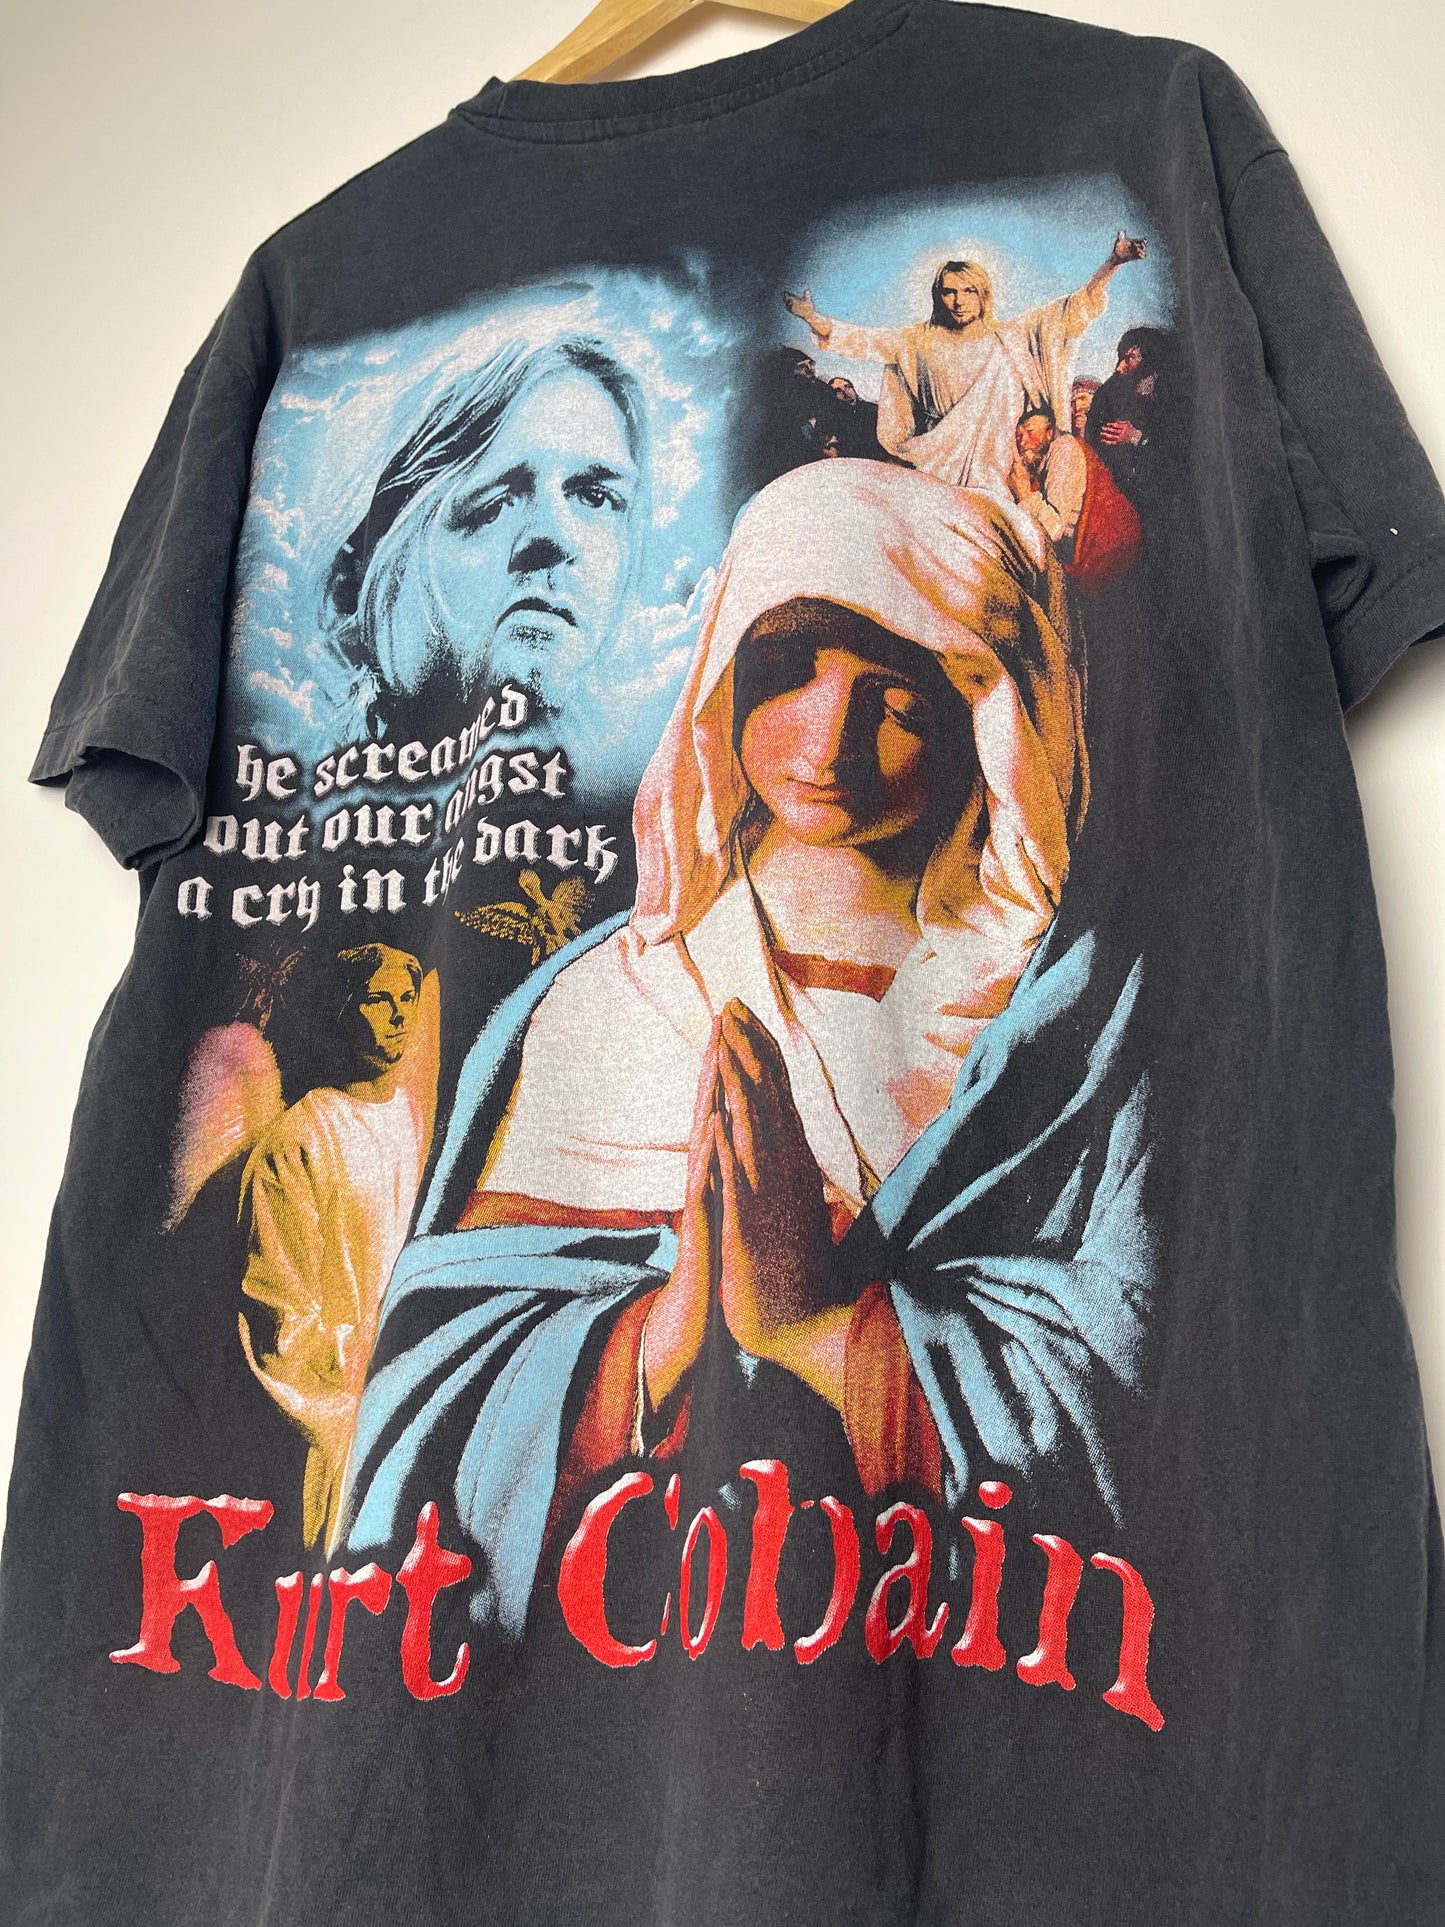 Vintage Style Nirvana Religion T-shirt - X Large